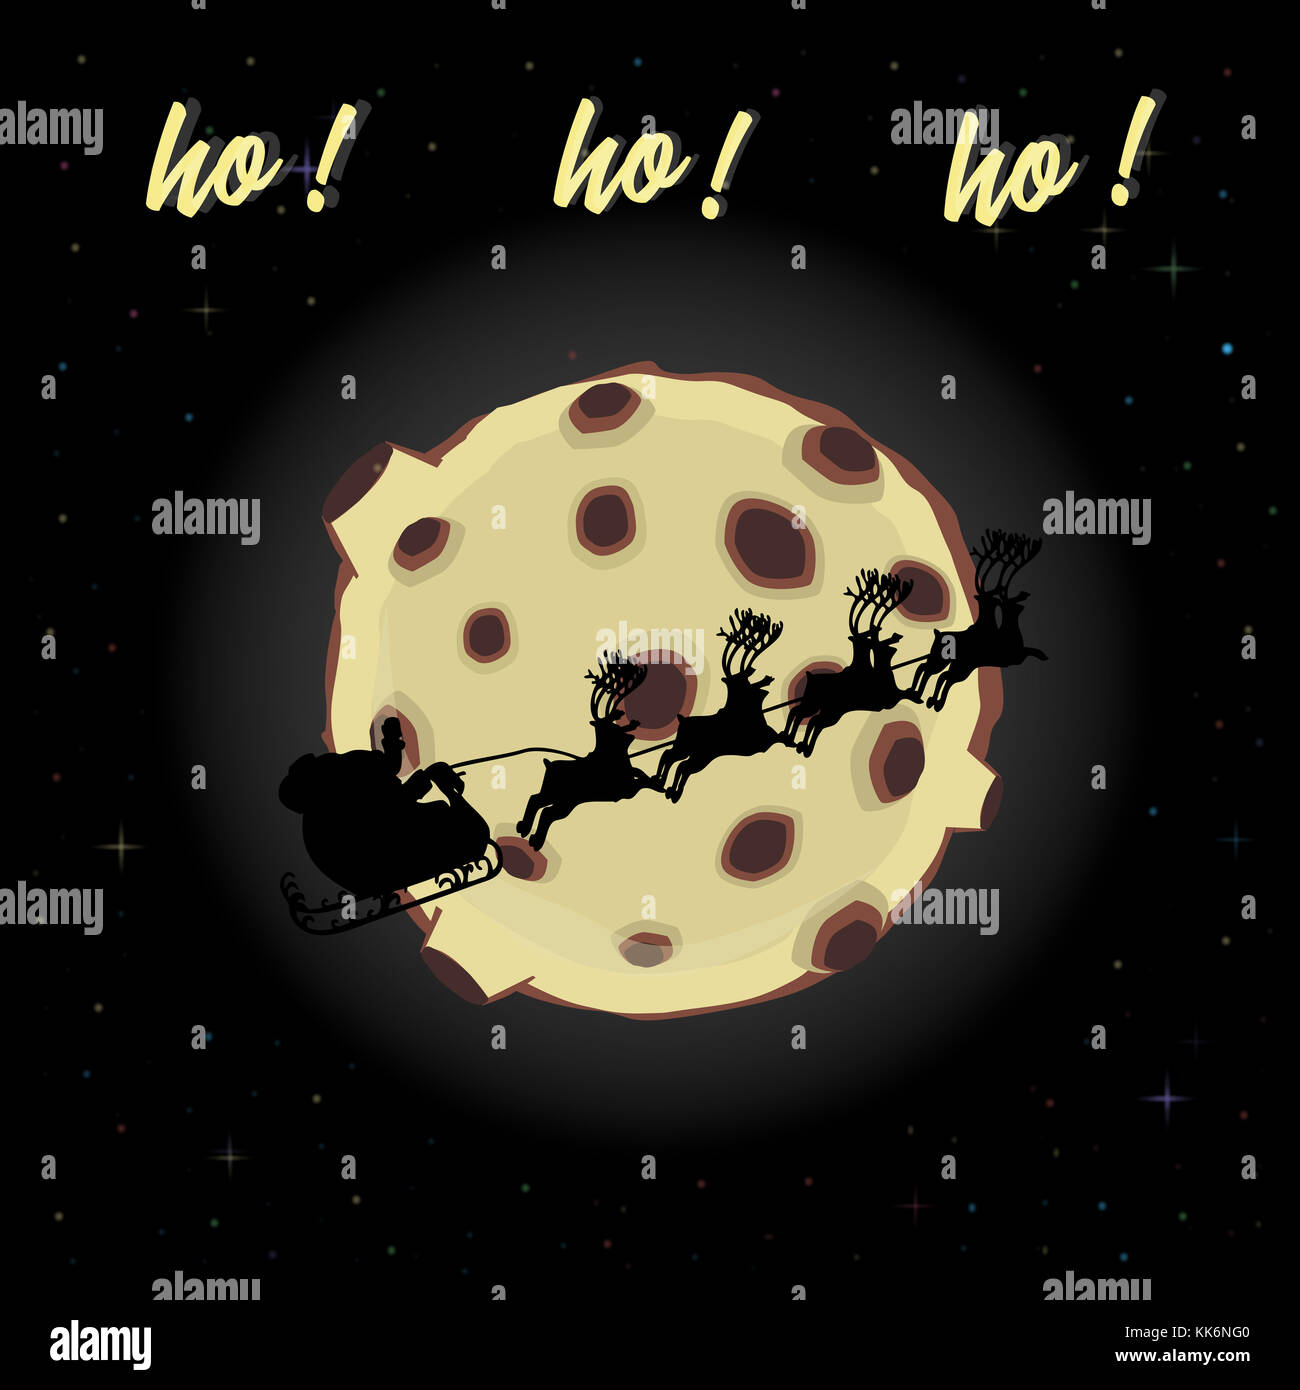 Frohes Neues Jahr und Frohe Weihnachten Karte mit Flying santa sleigh Silhouette auf Full moon Hintergrund mit Sternen und Text Ho Ho Ho Stockfoto